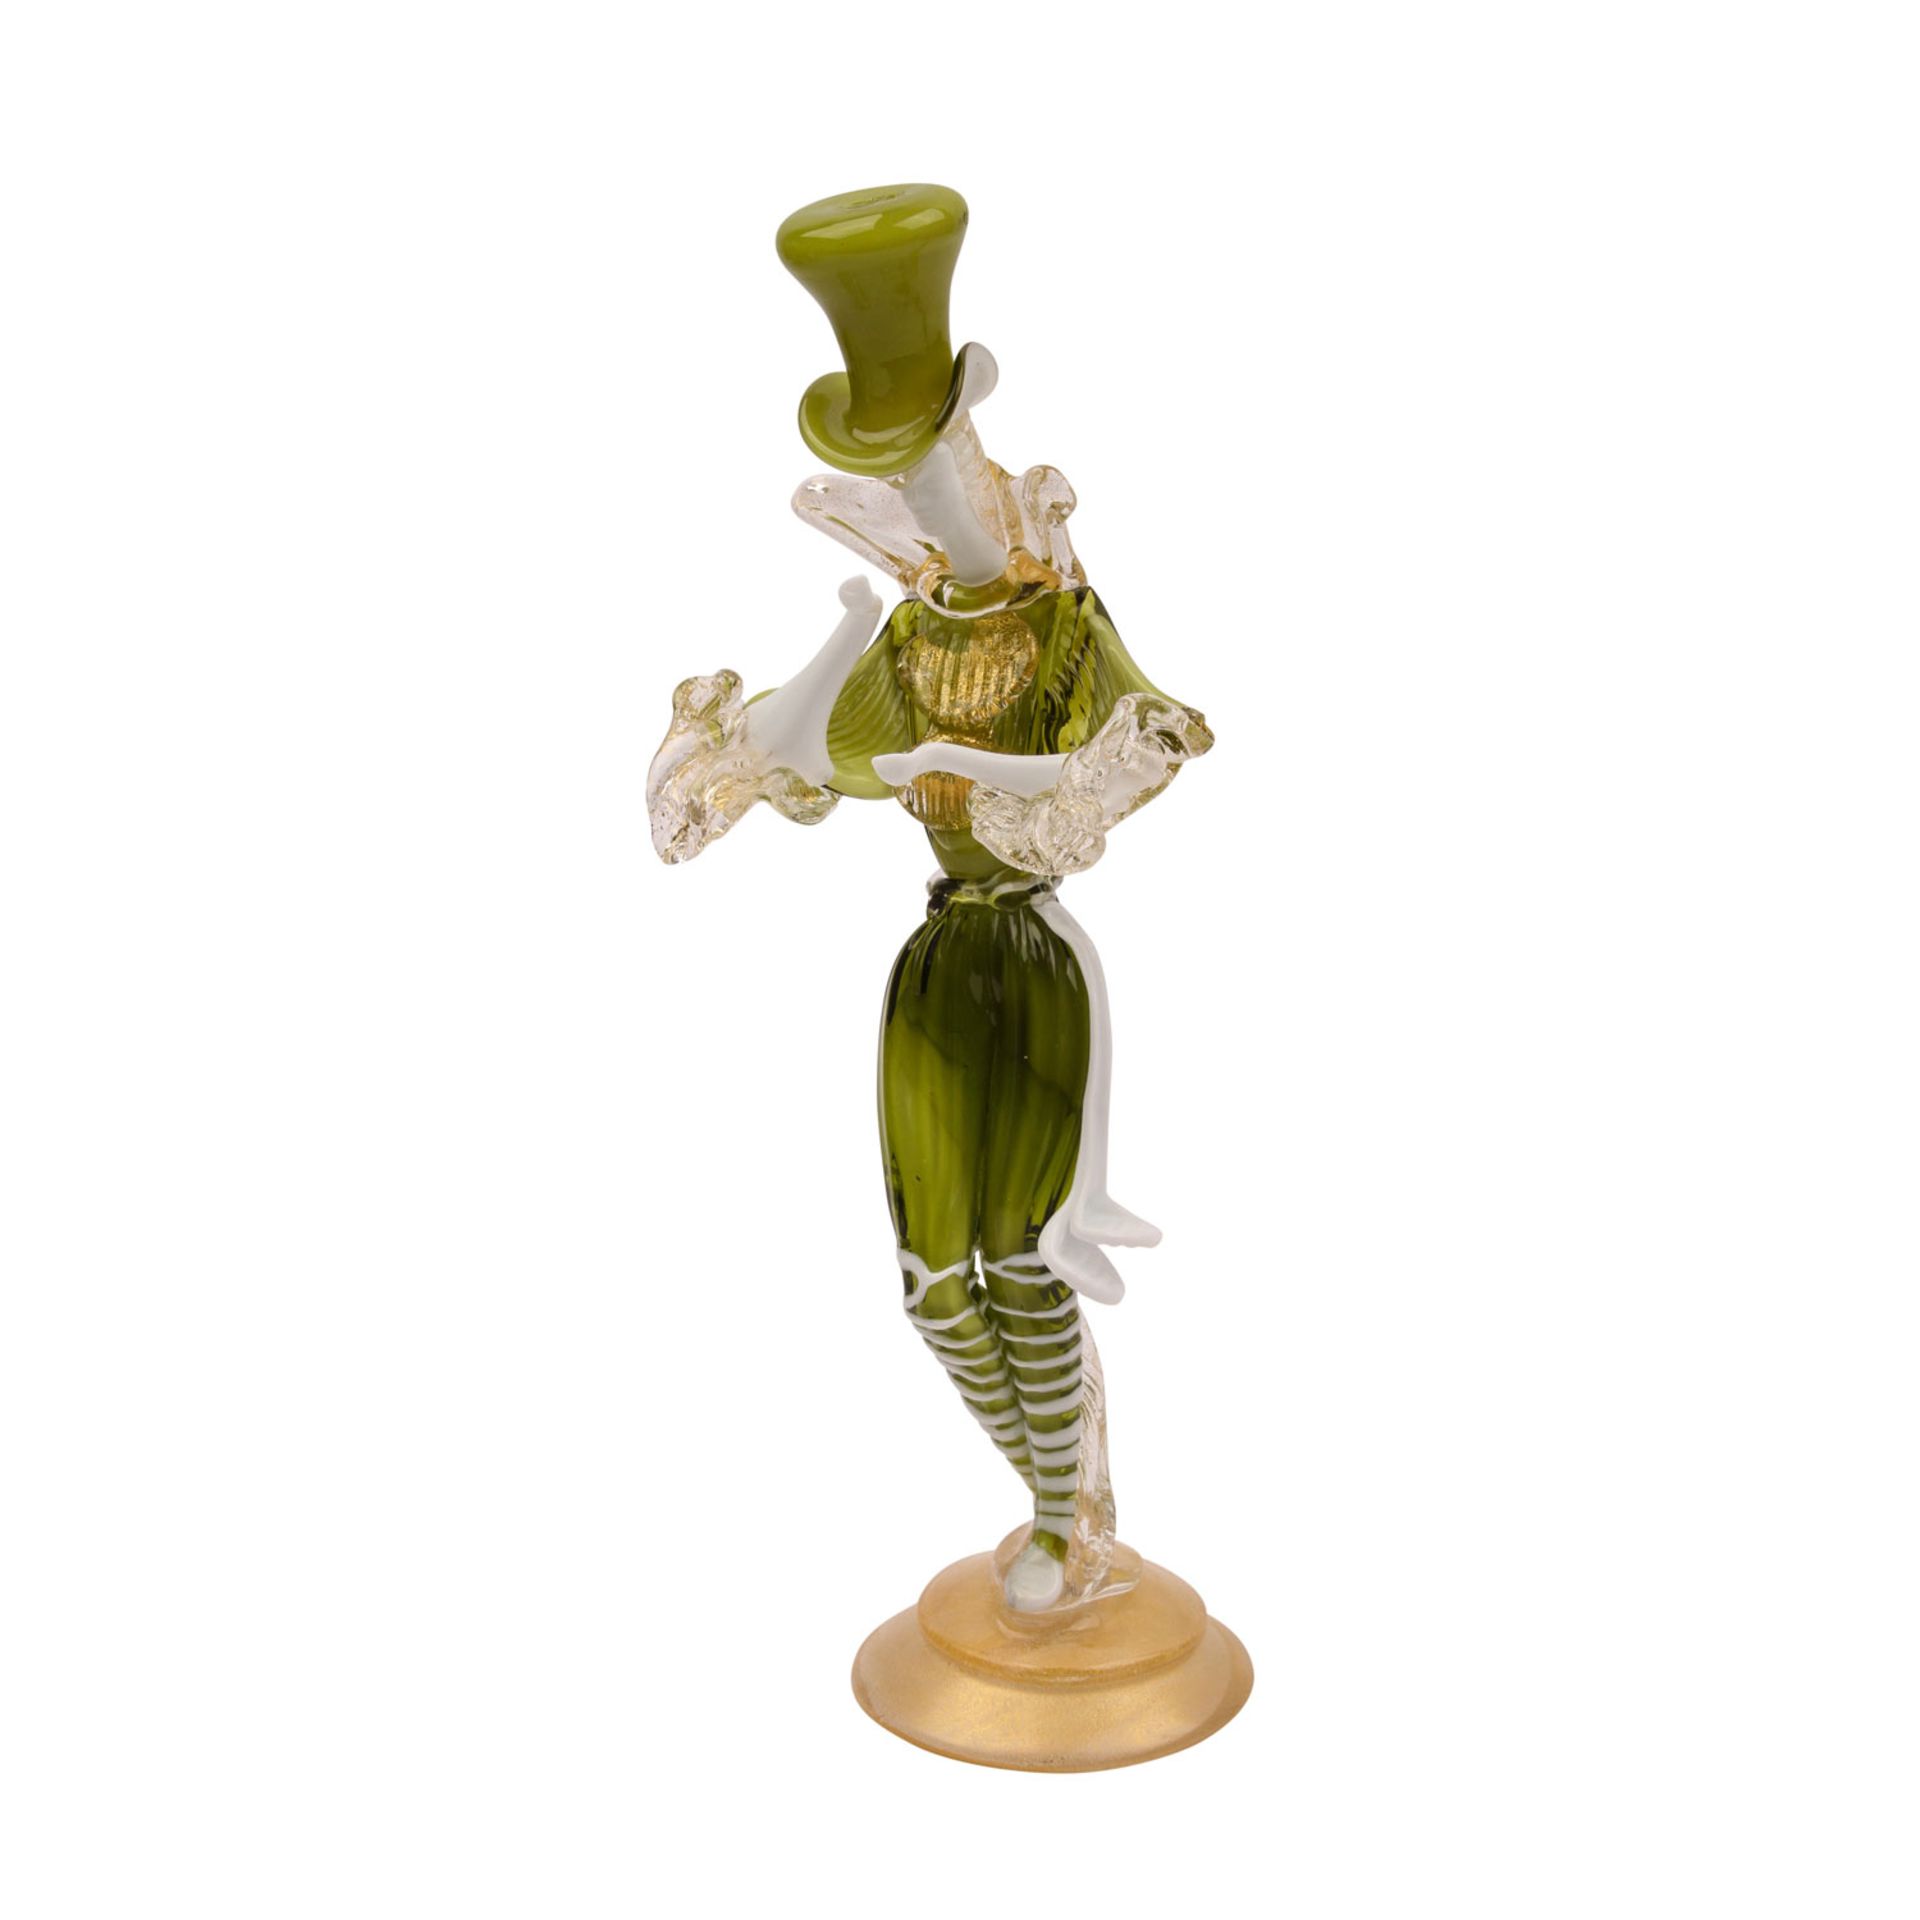 MURANO Ars Vetraria. Glasfigur, 20. Jh..Langgestreckte Figur mit einem grünen Kostüm und Zylinder